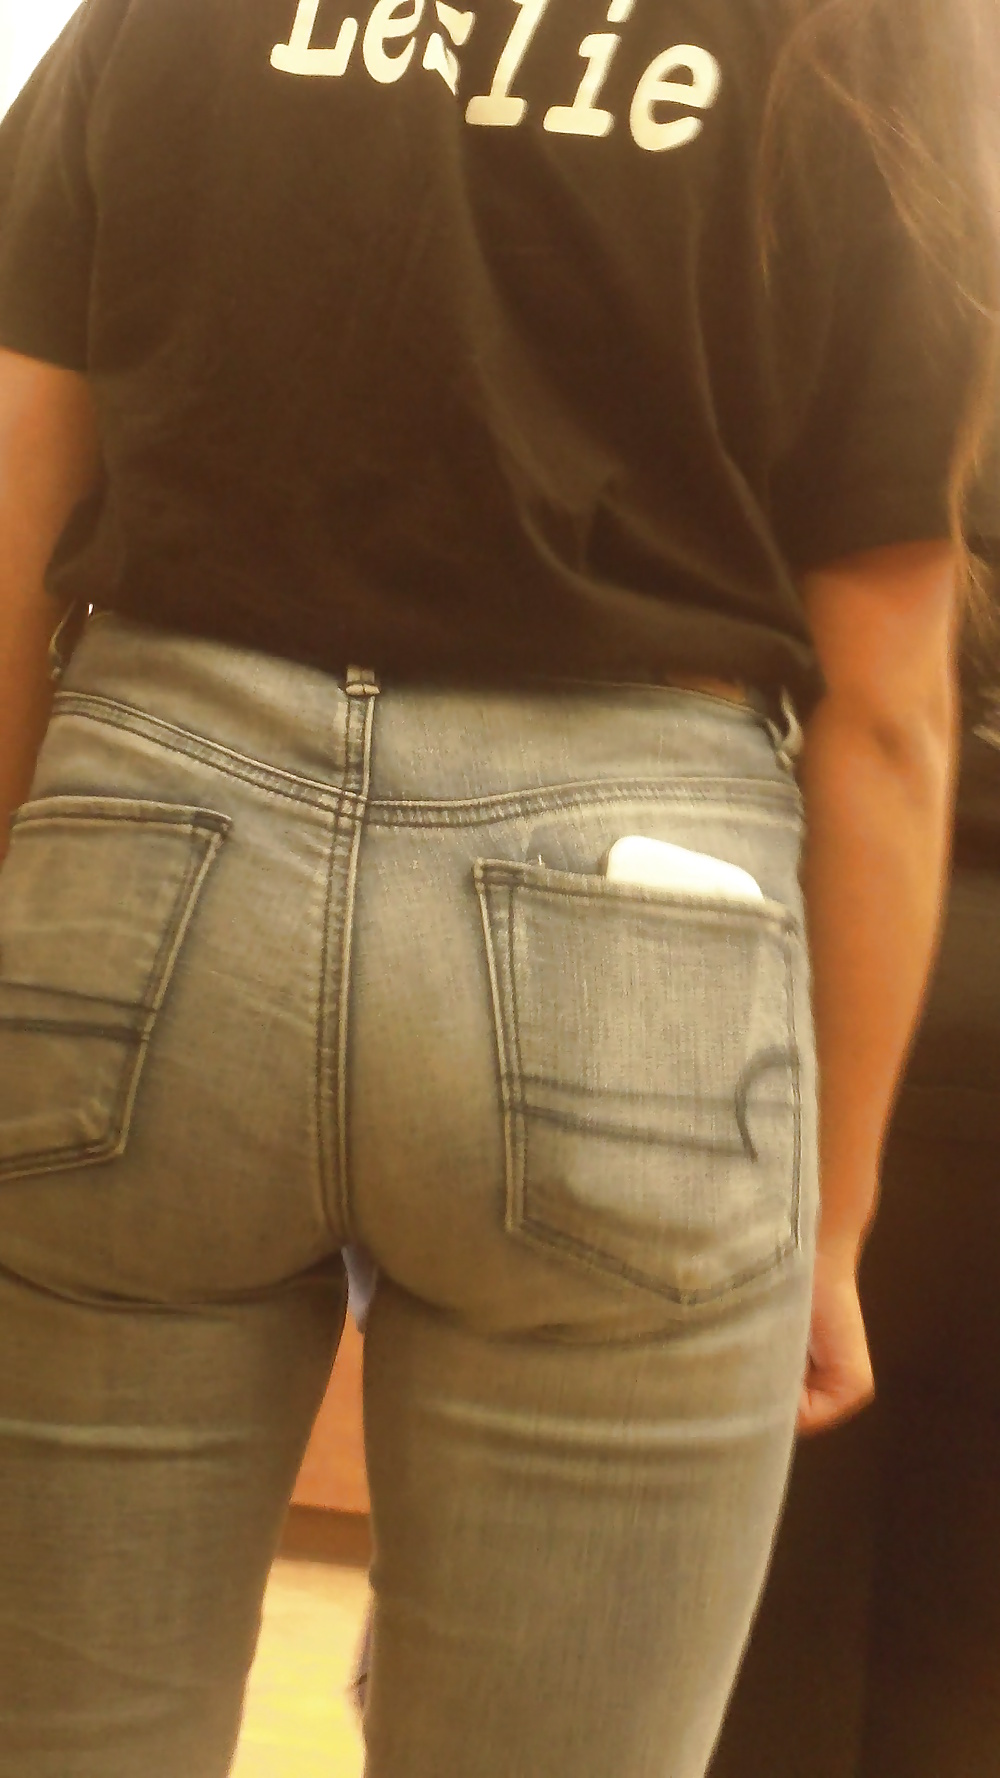 Popular teen girls ass & butt in jeans Part 6 #32009704